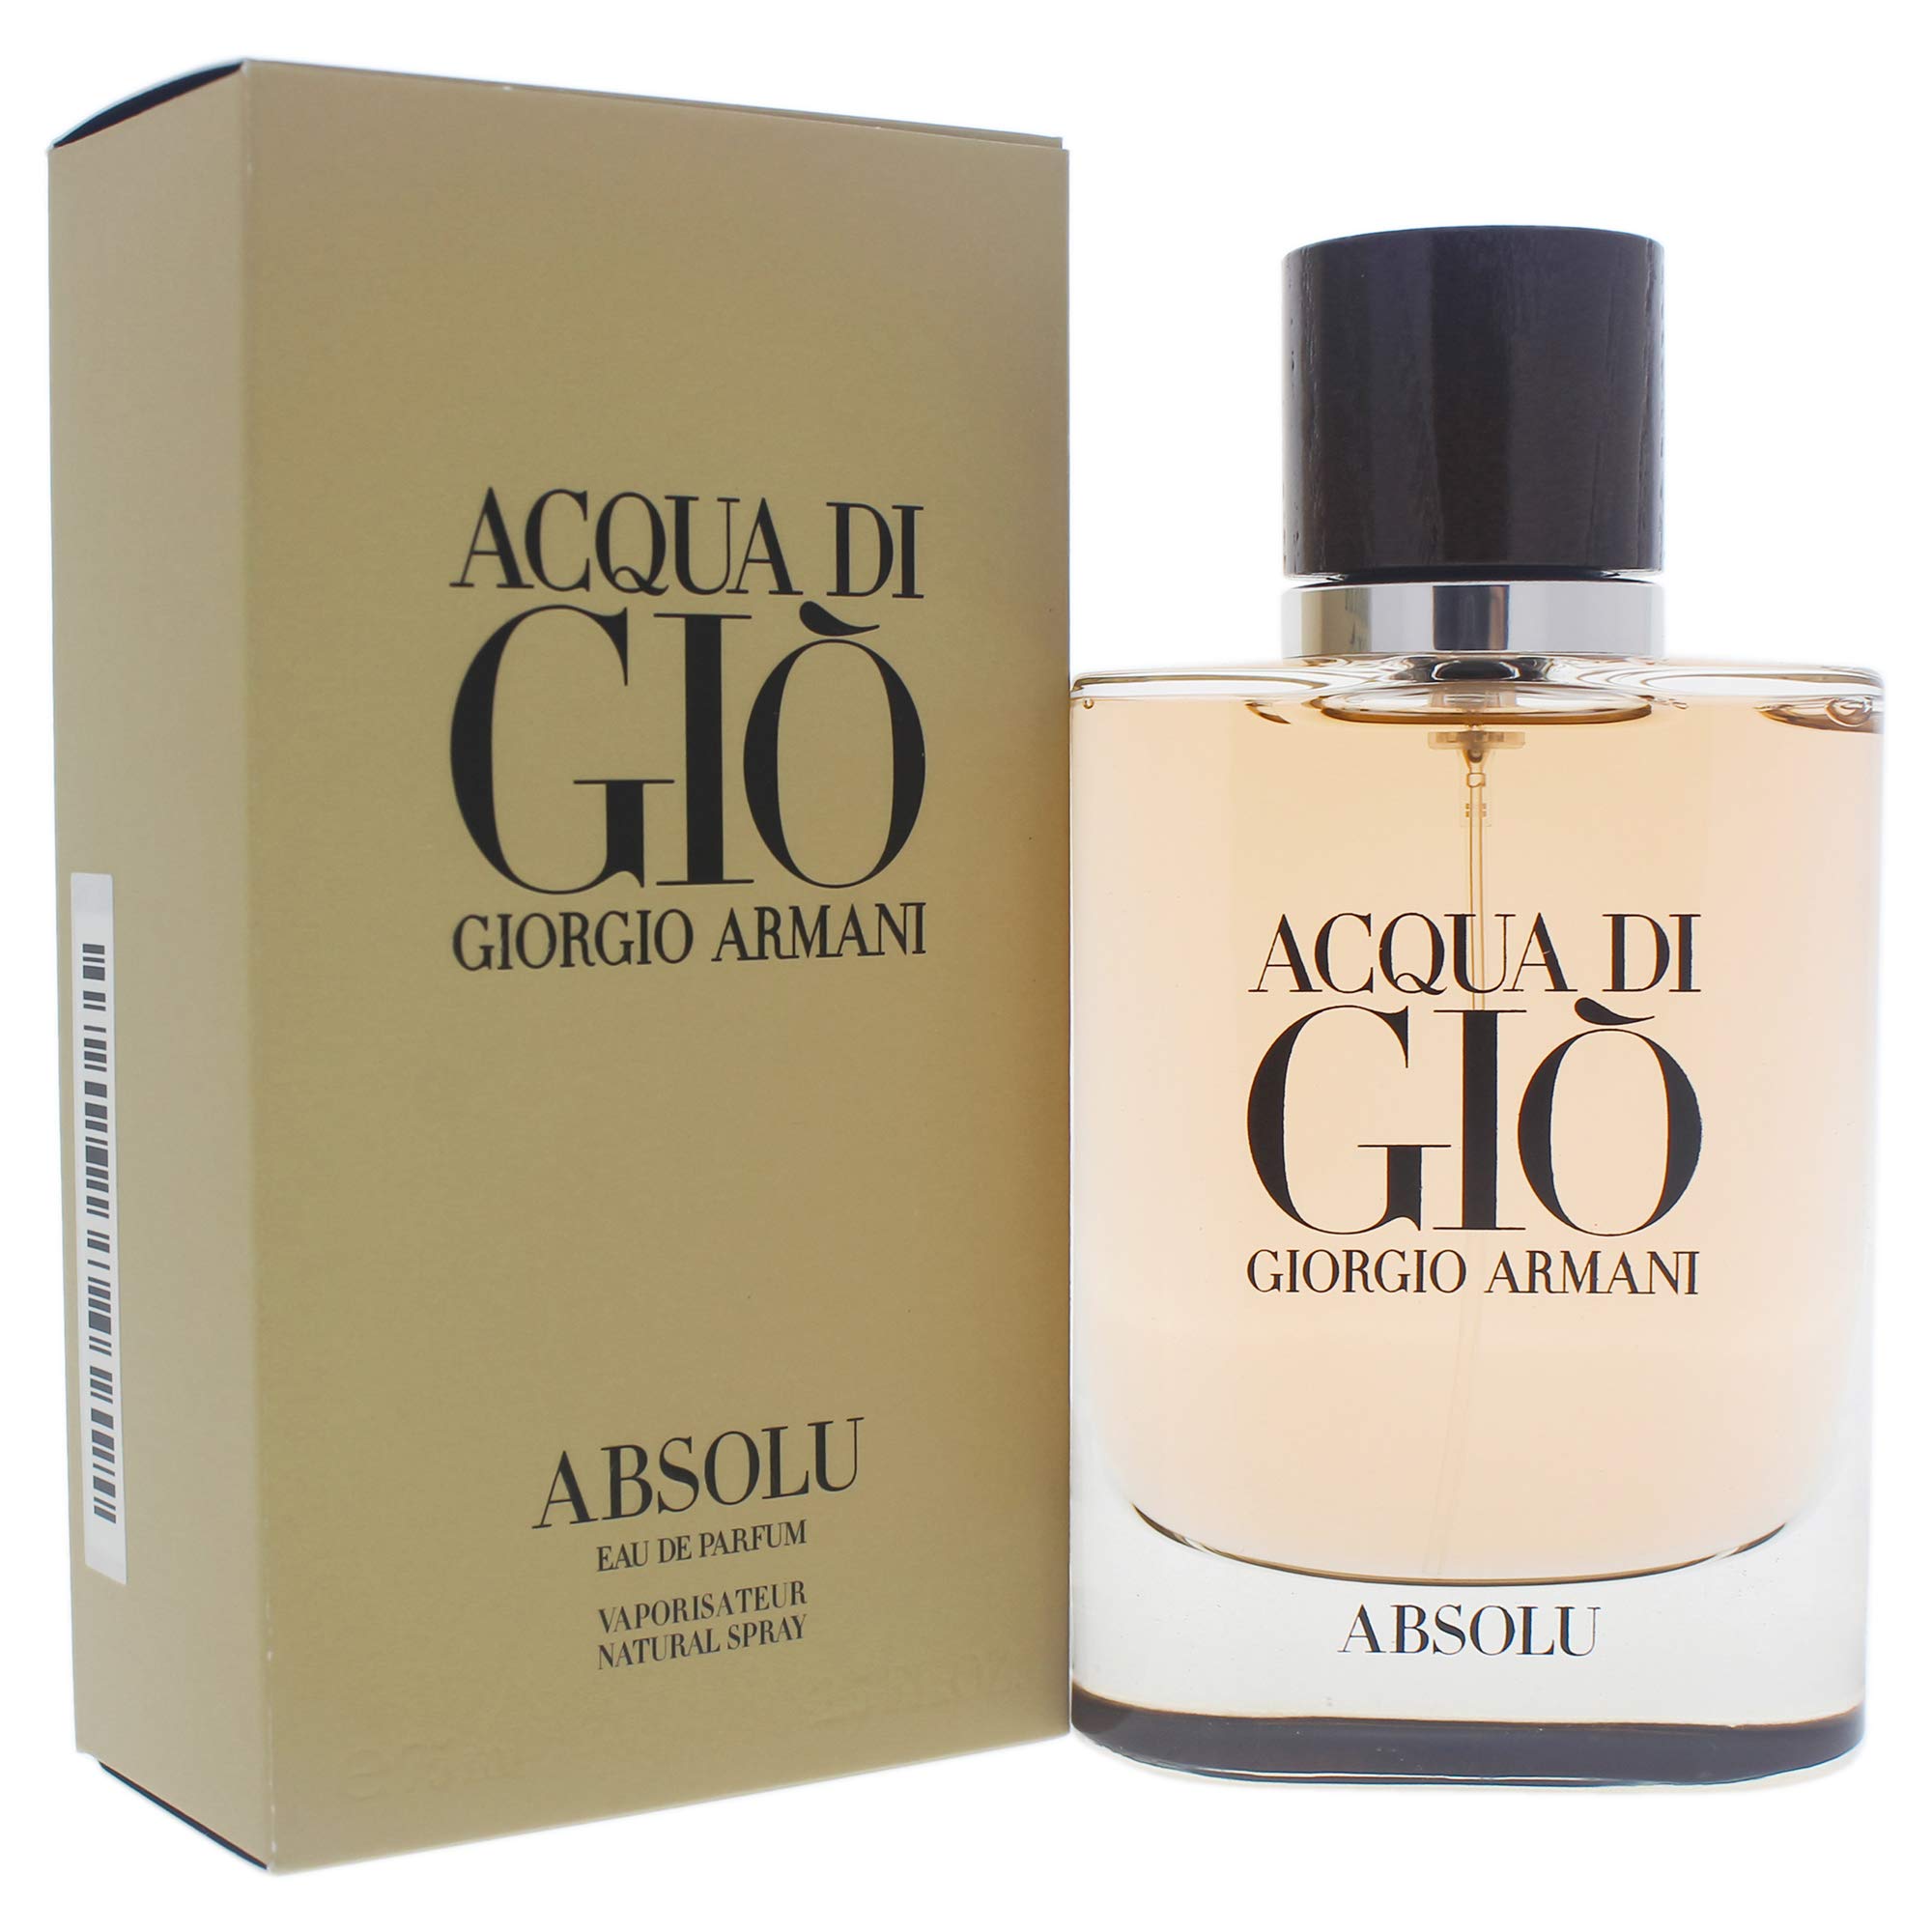 GIORGIO ARMANI Acqua Di Gio Absolu Eau De Parfum Spray, 2.5 Fl Oz, Beige